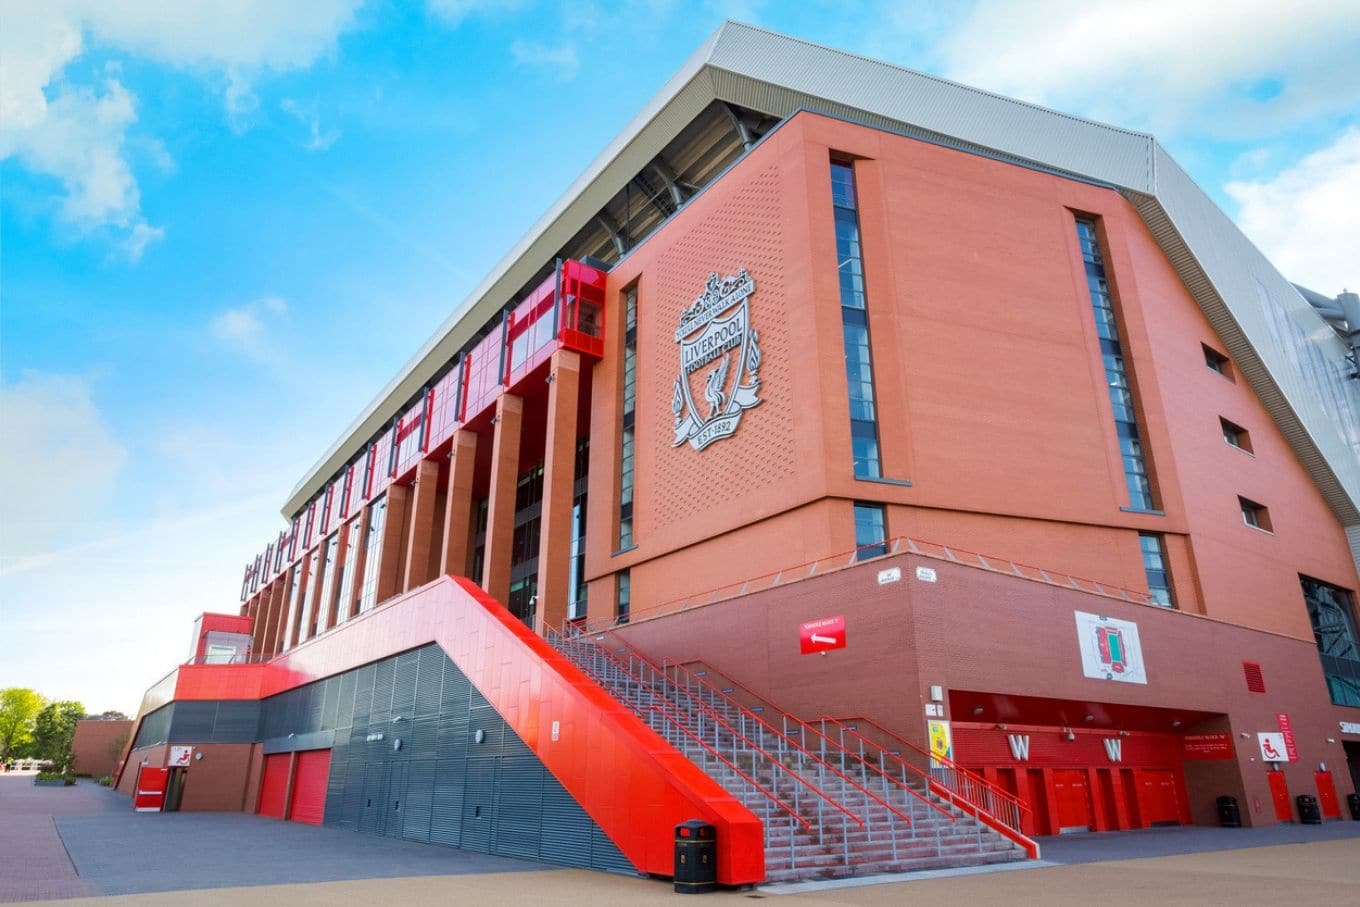 Liverpool: Anfield, o paraíso dos treinadores de futebol, Esportes